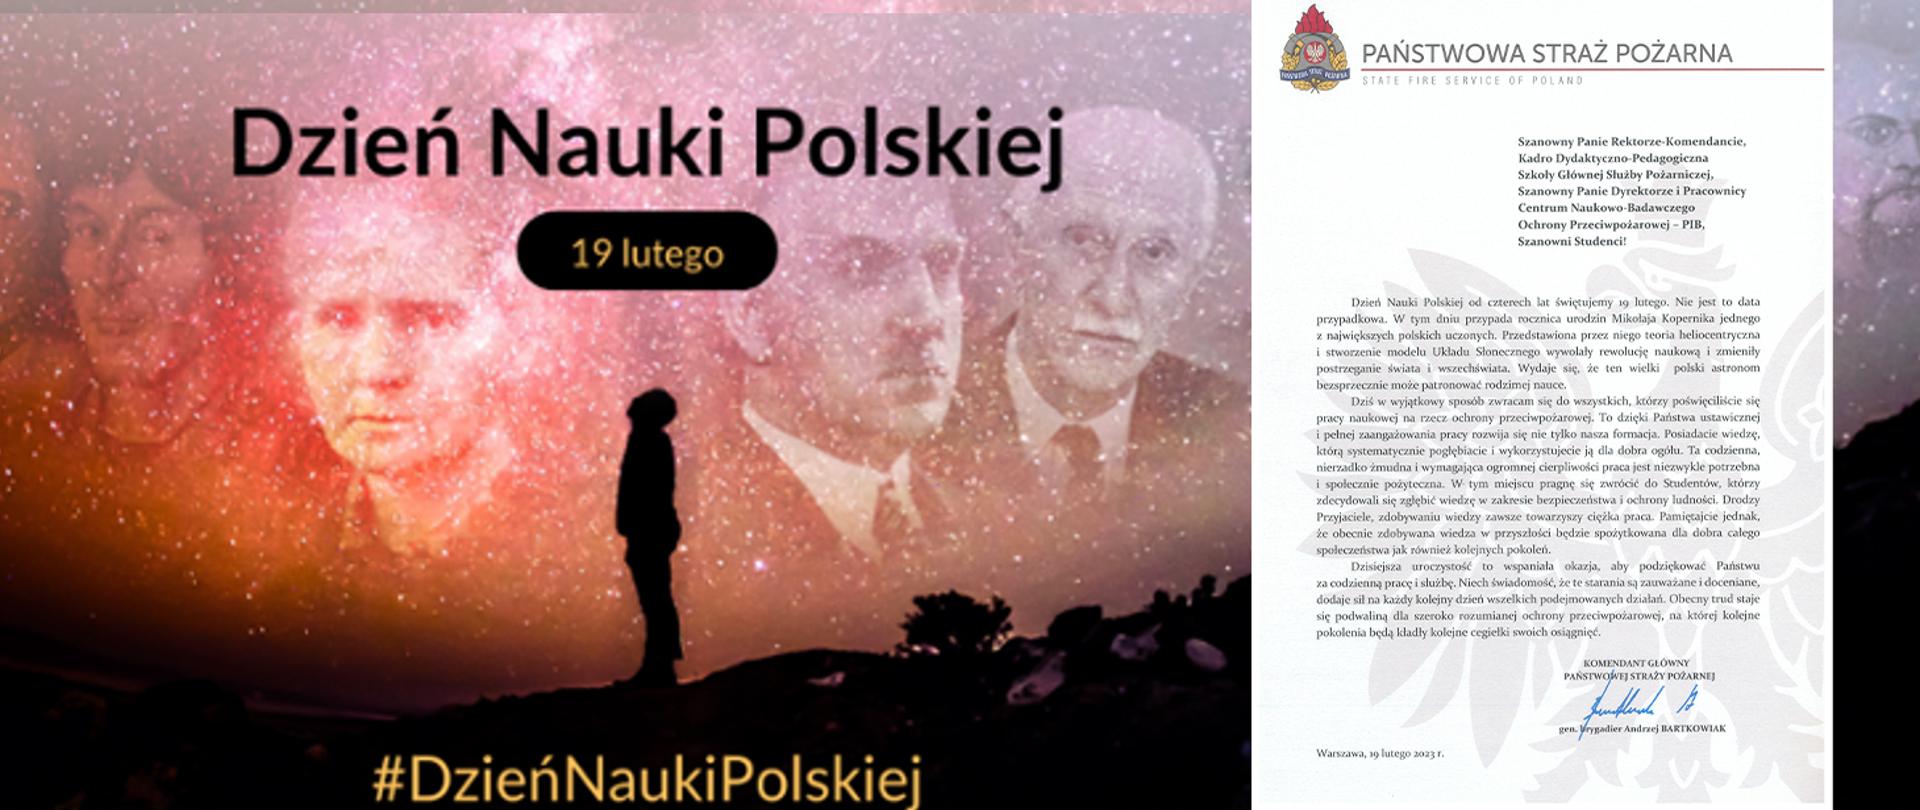 Życzenia Komendanta Głównego z okazji Dnia Nauki Polskiej